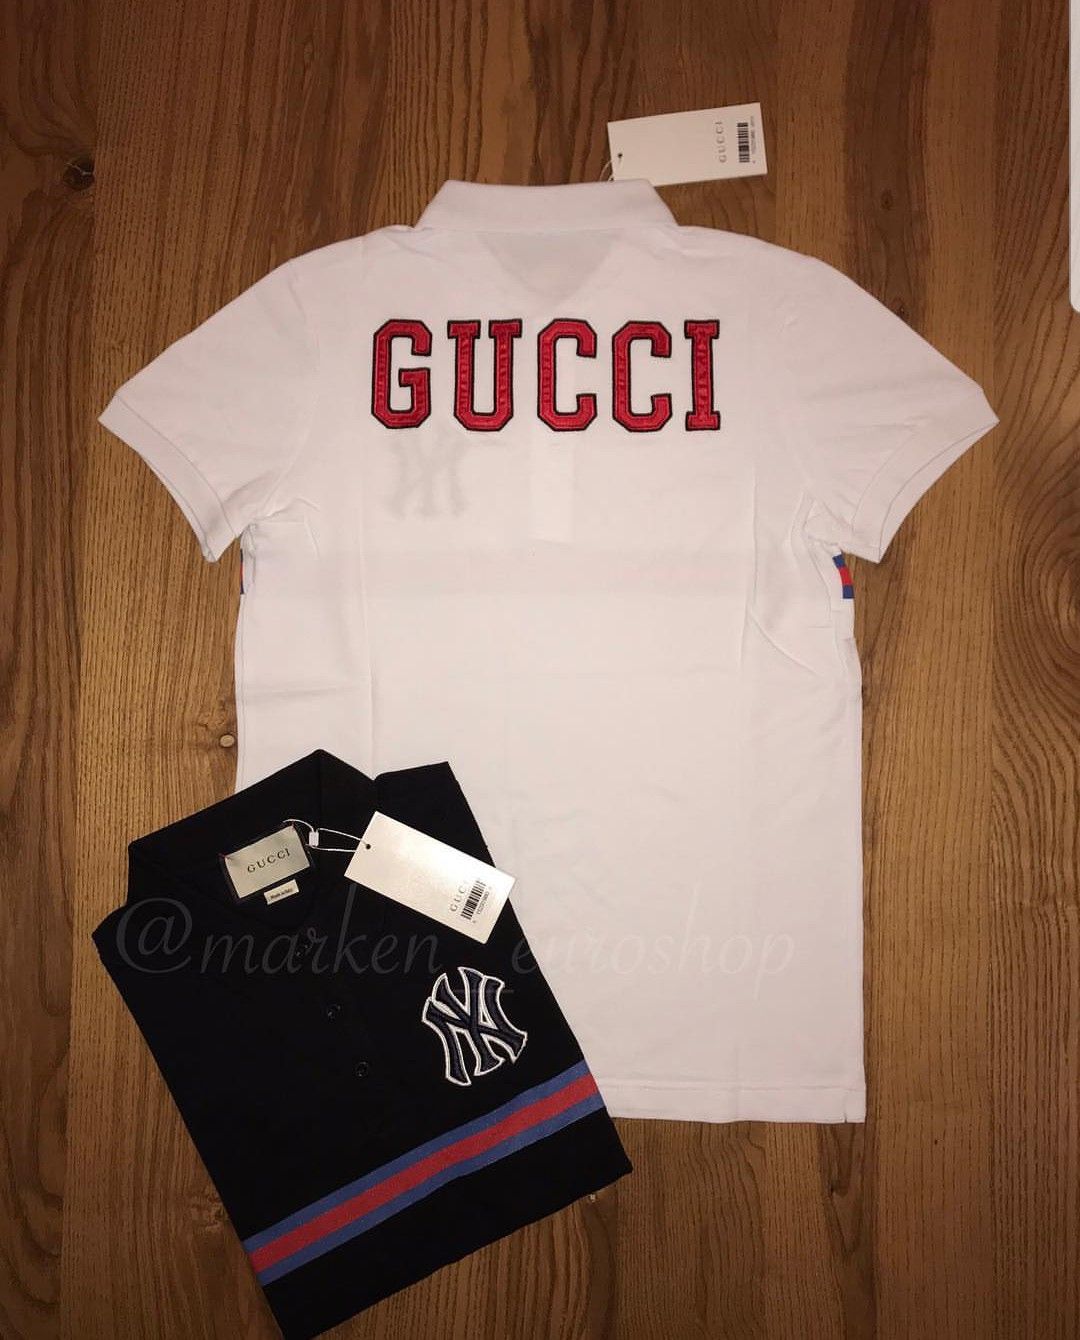 Gucci tshirts